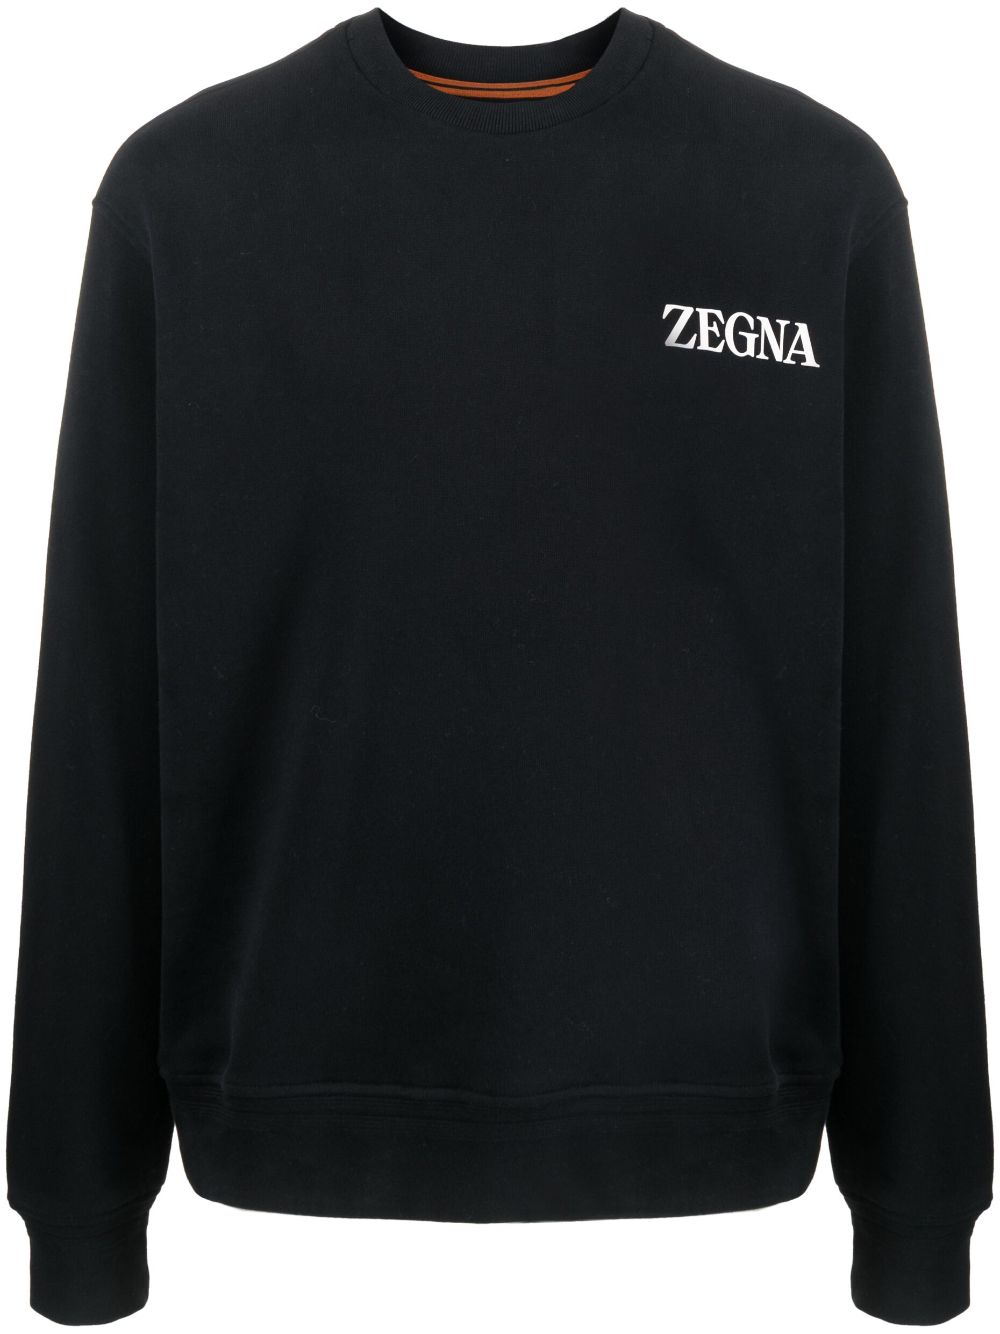 Zegna #UseTheExisting™ cotton sweatshirt - Black von Zegna